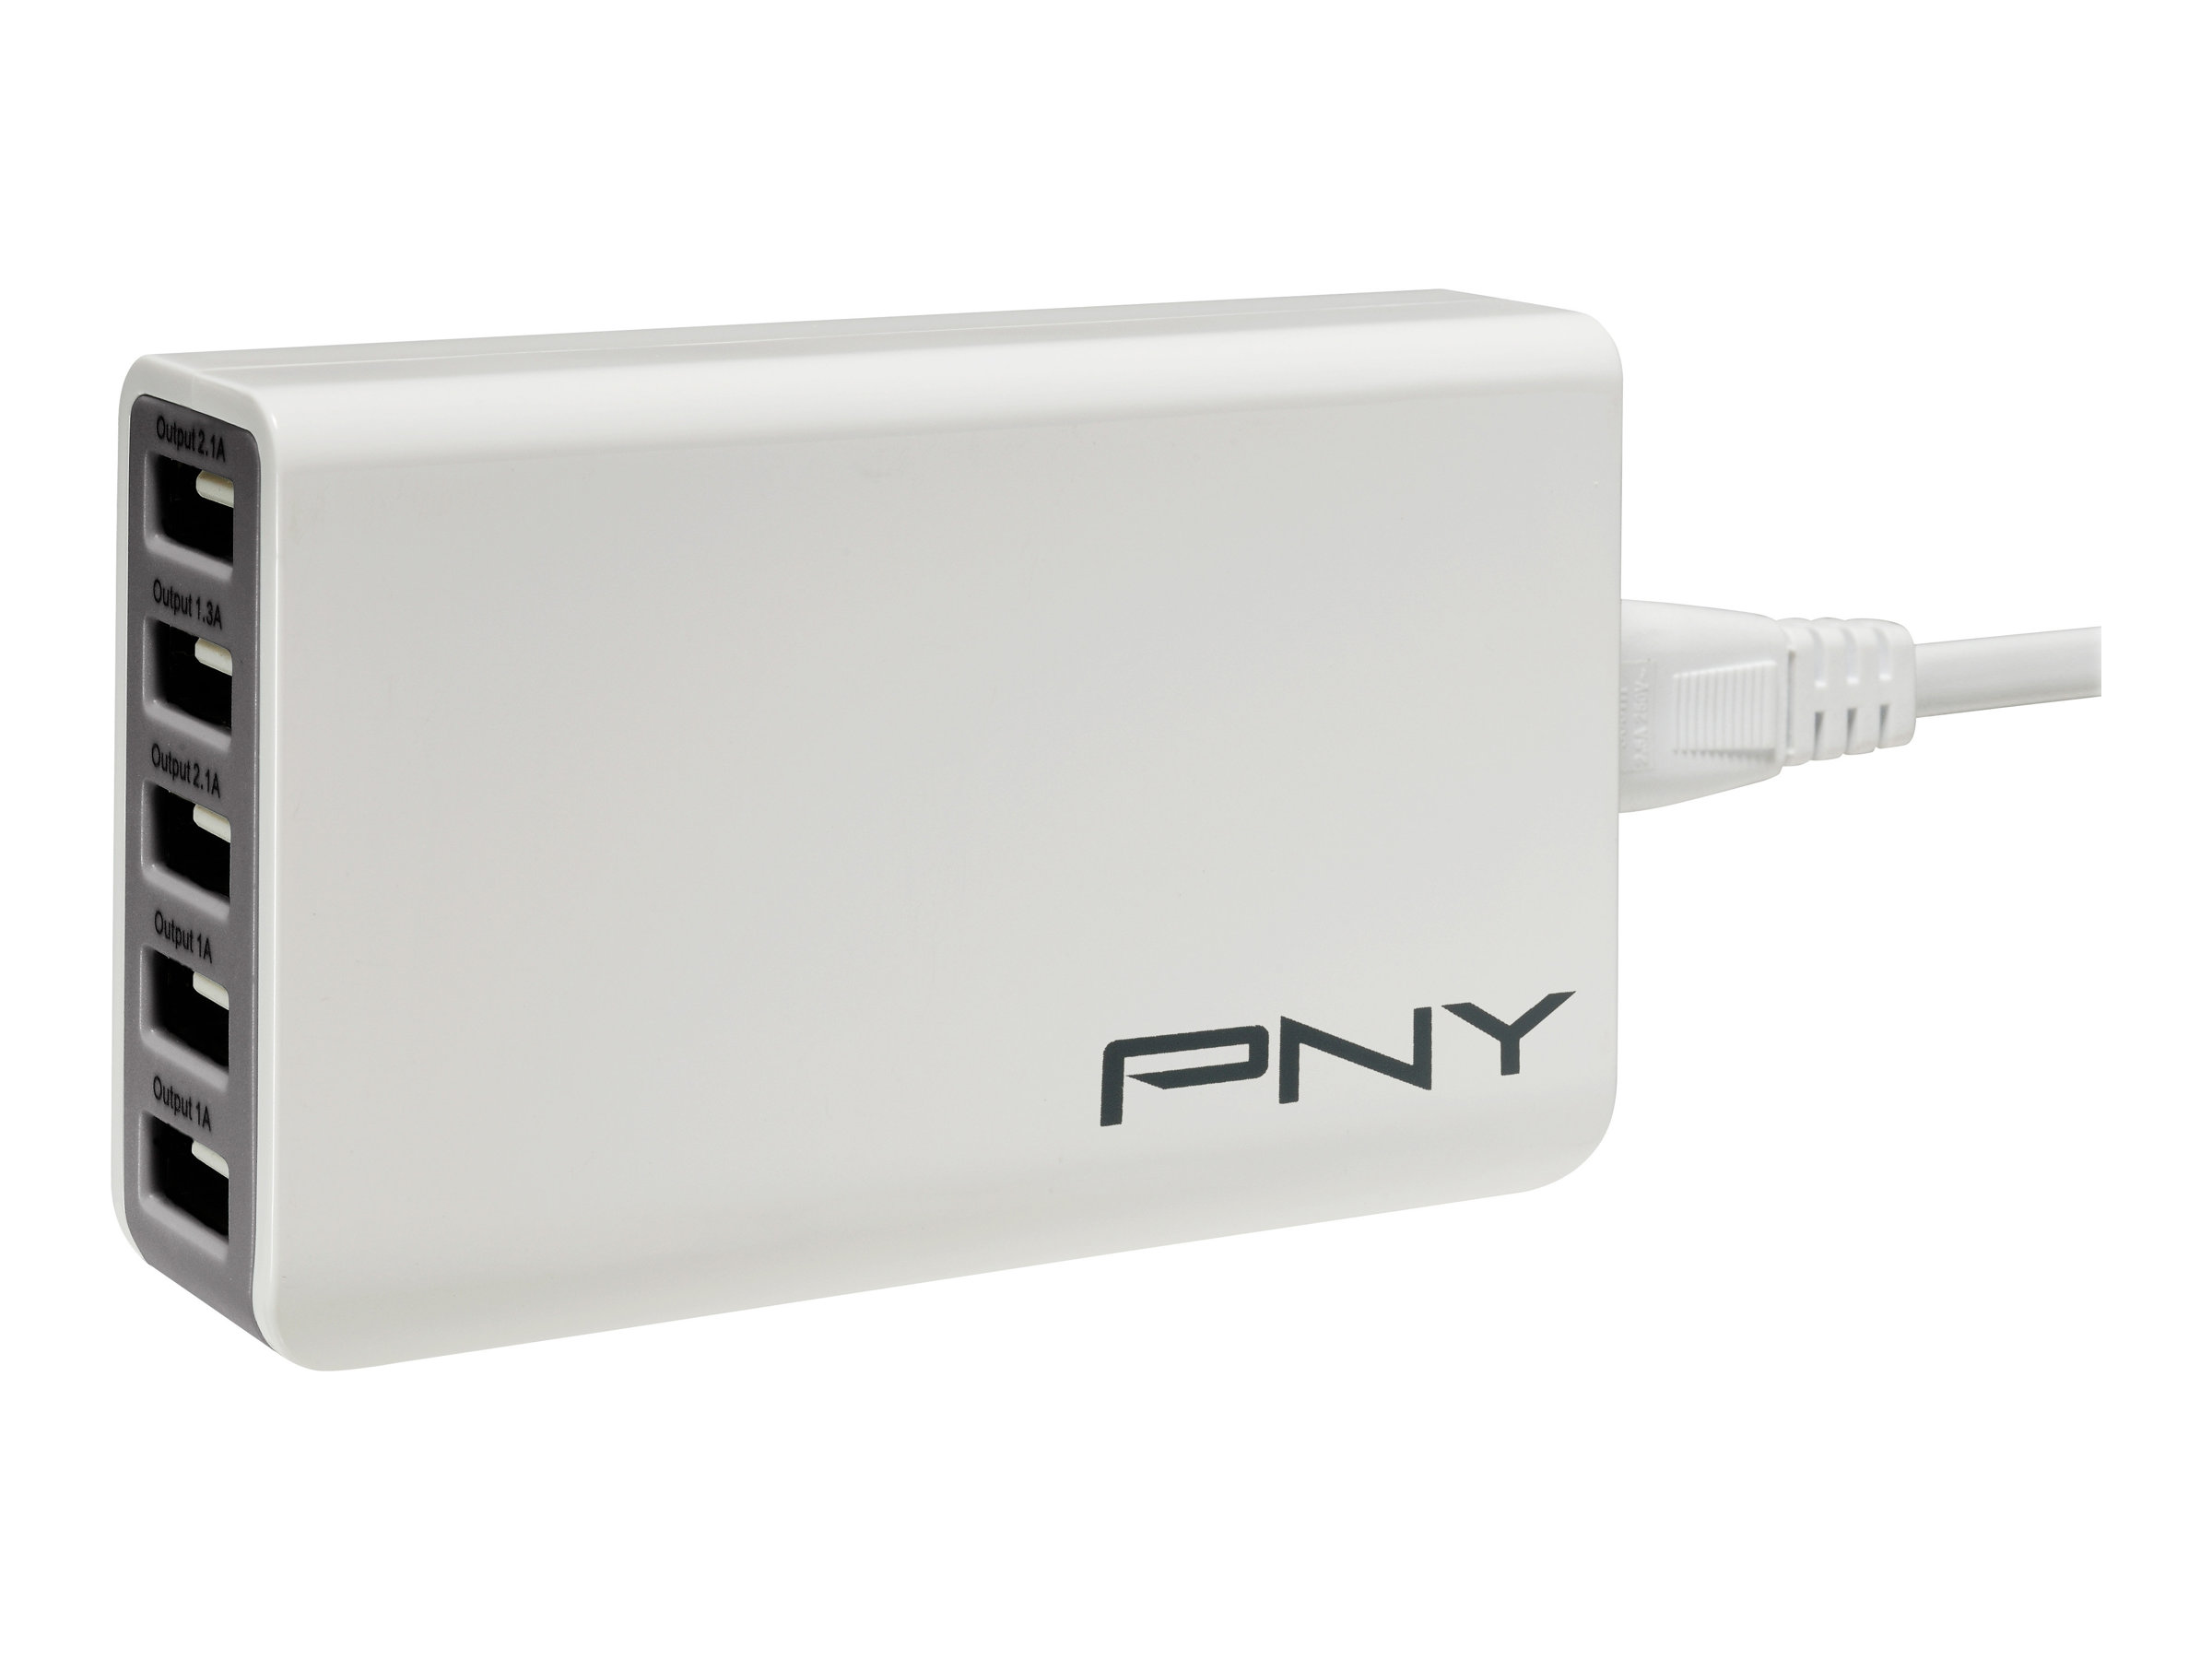 PNY Multi-USB Charger - Netzteil - 25 Watt - 2.1 A - 5 Ausgabeanschlussstellen (USB) - Europäische Union